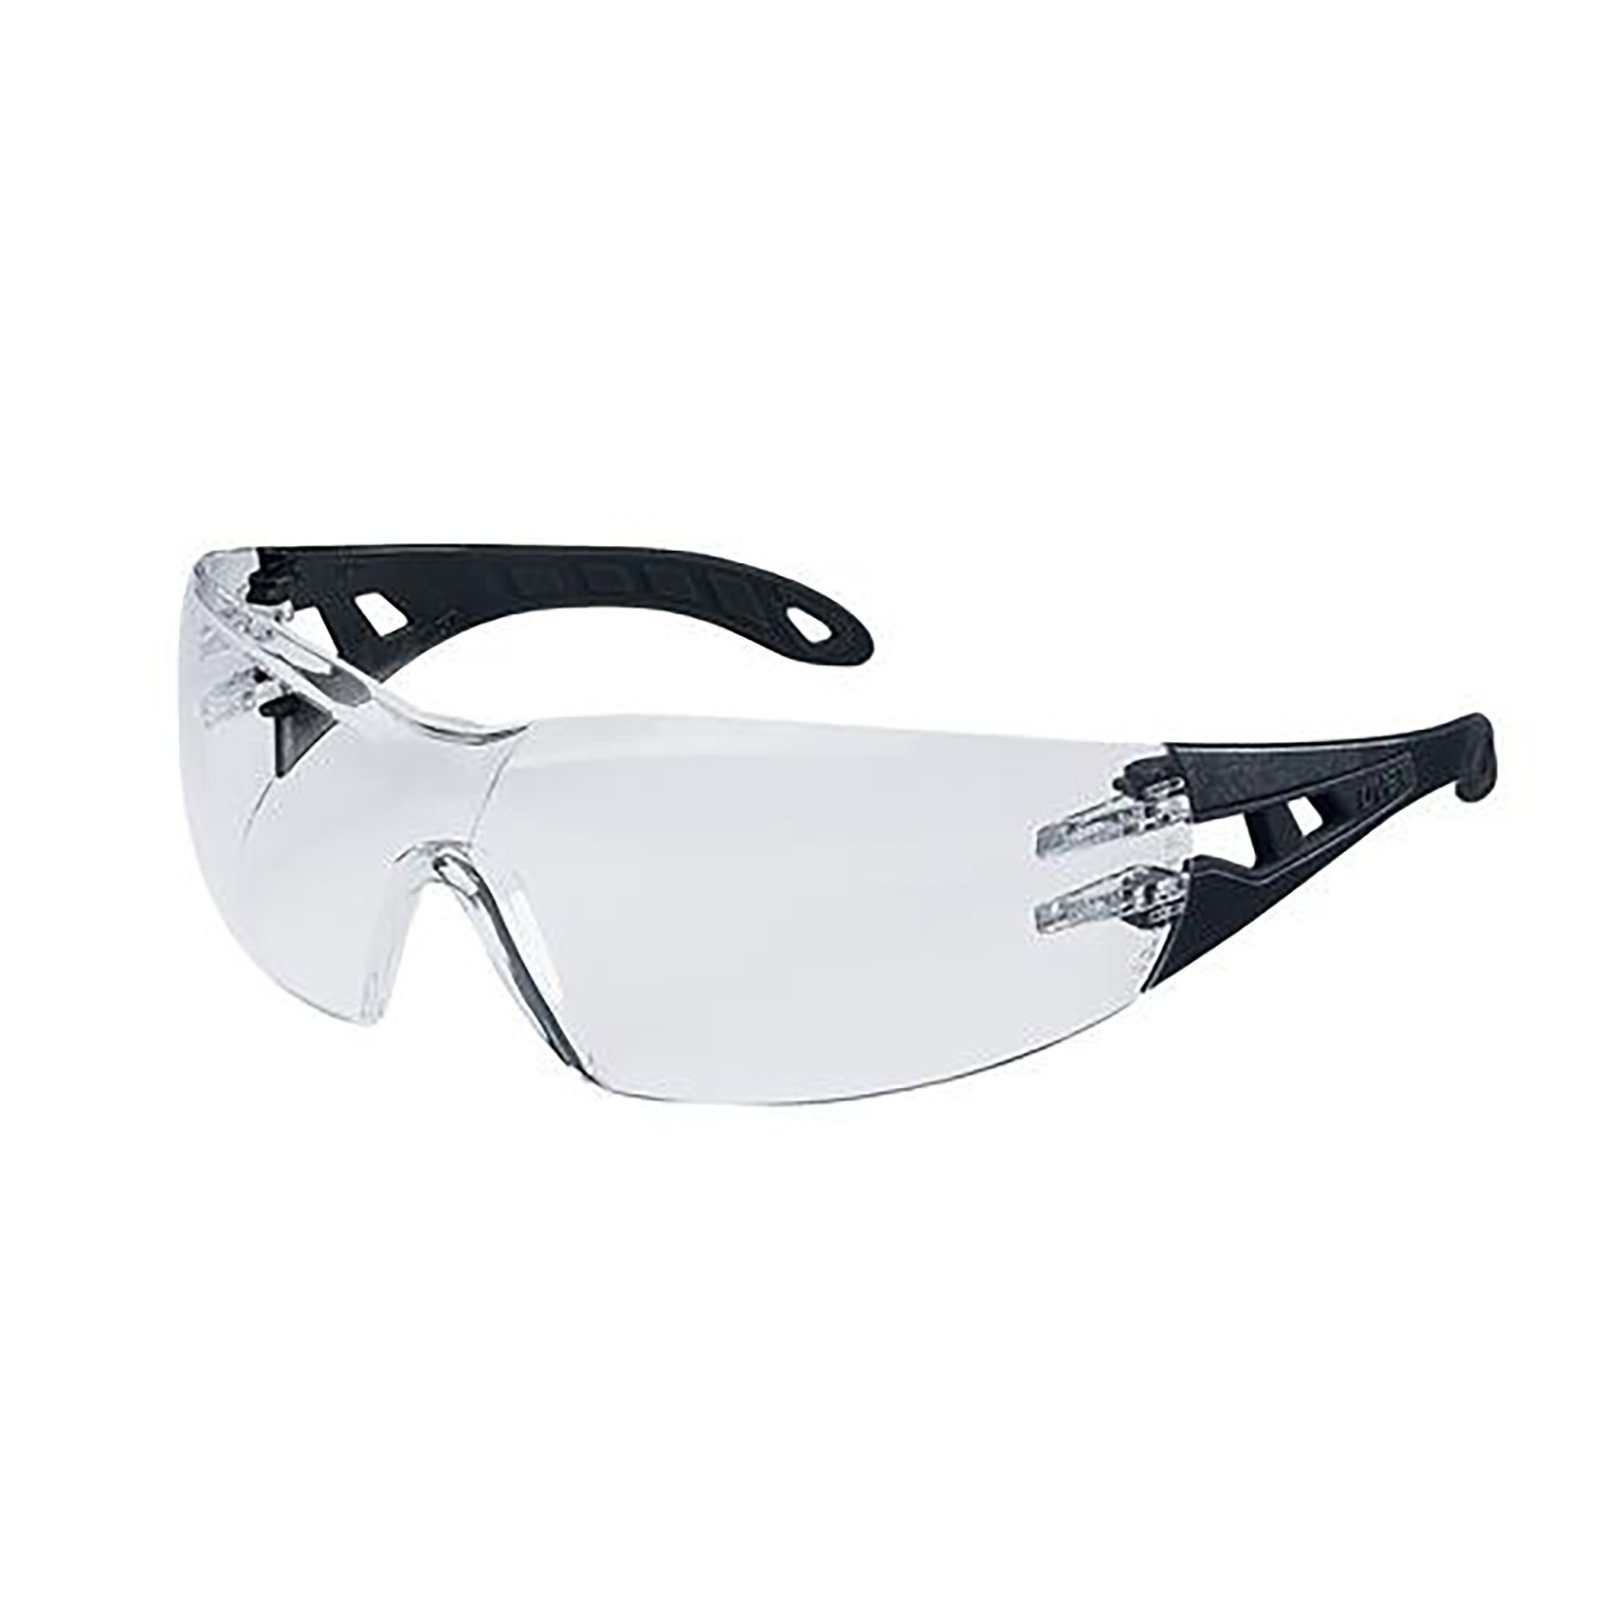 Uvex Arbeitsschutzbrille Bügelbrille pheos 9192372 sv exc